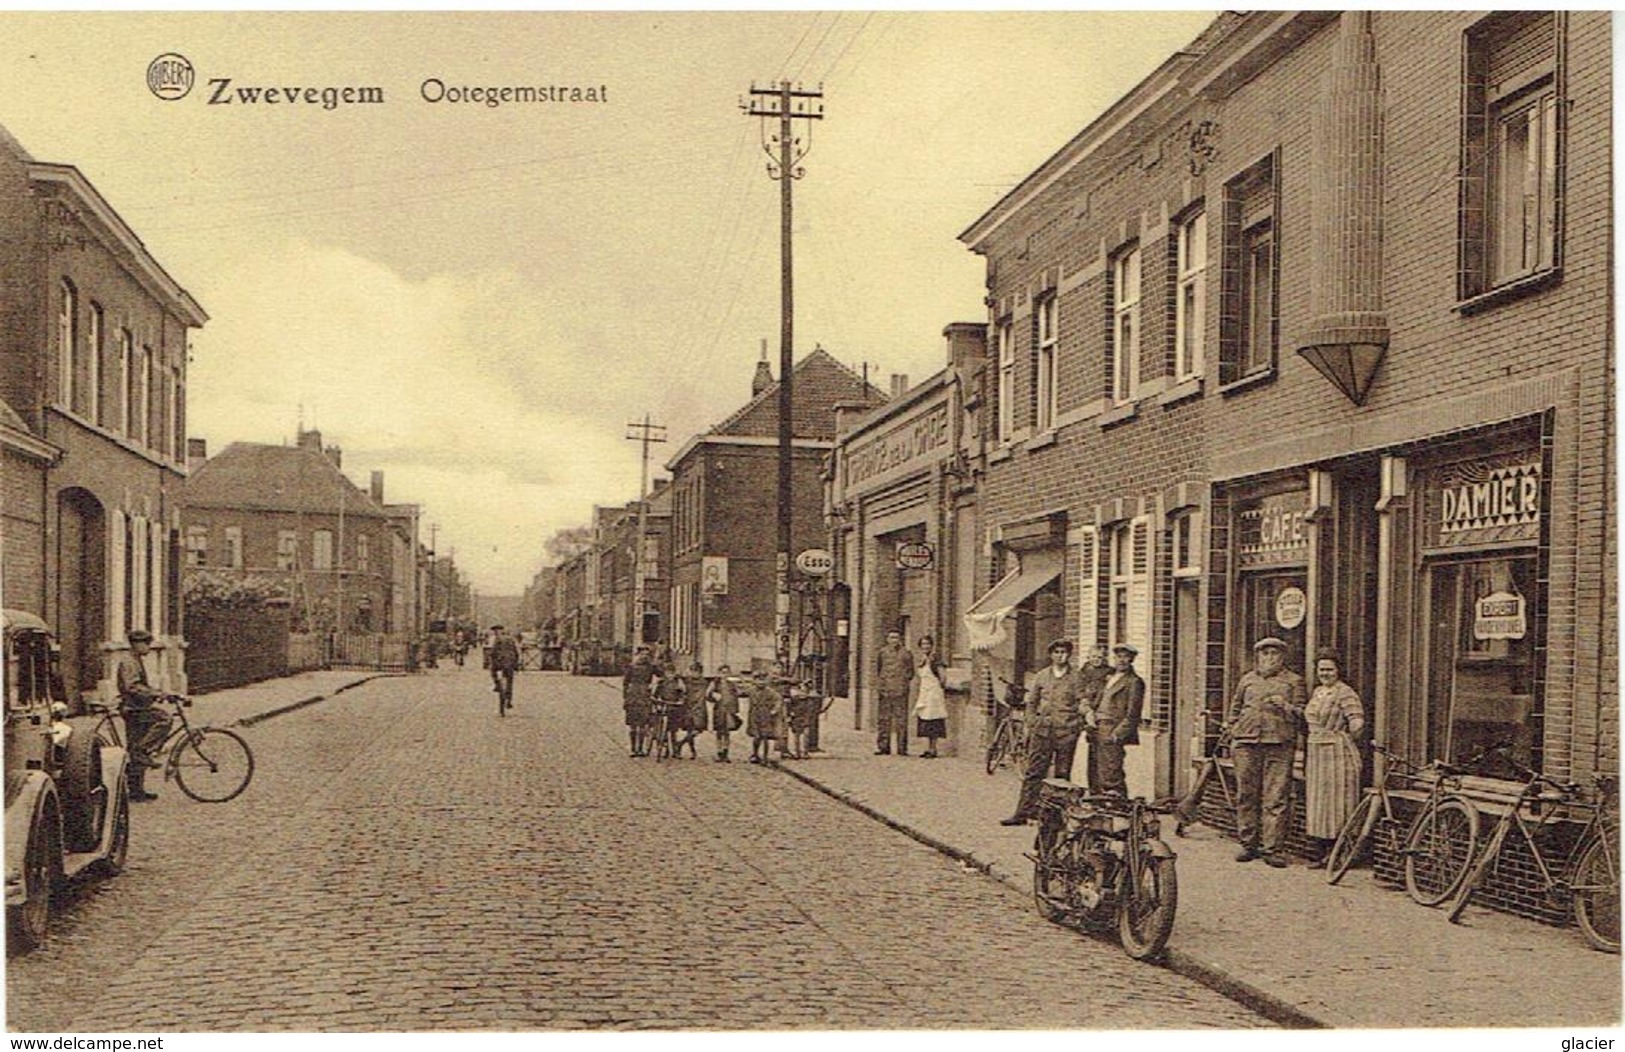 ZWEVEGEM - Ootegemstraat - Zwevegem